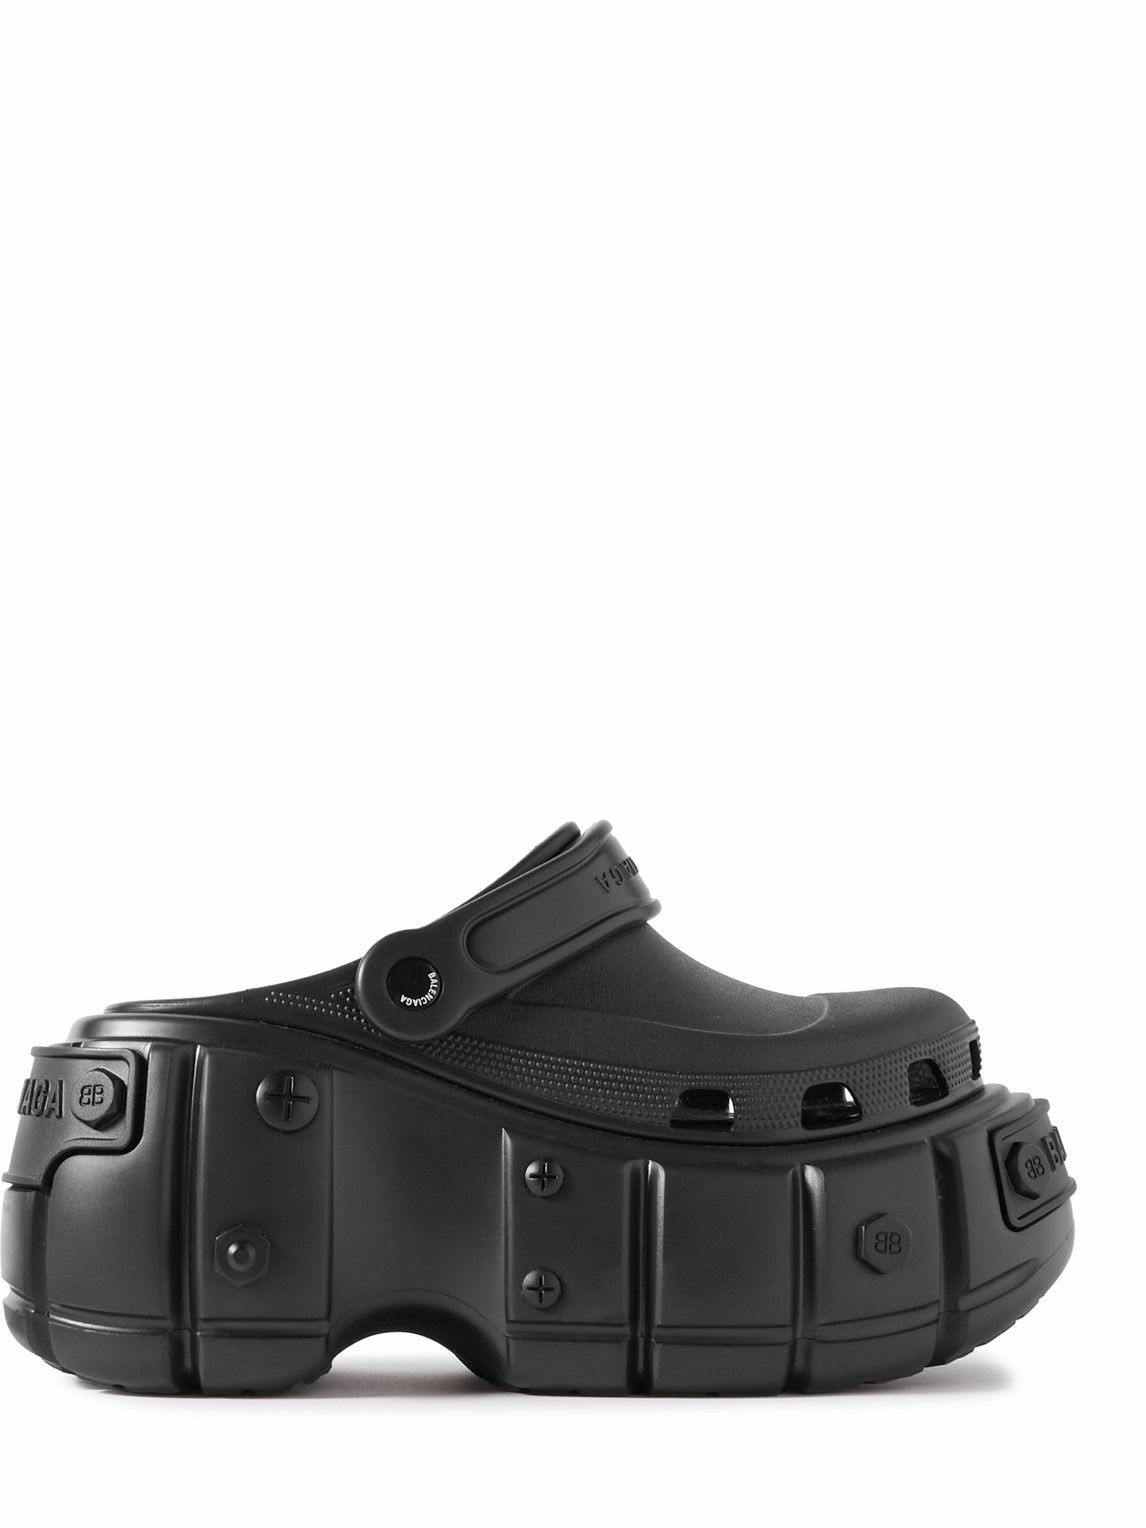 Balenciaga - Rubber Platform Sandals - Black Balenciaga